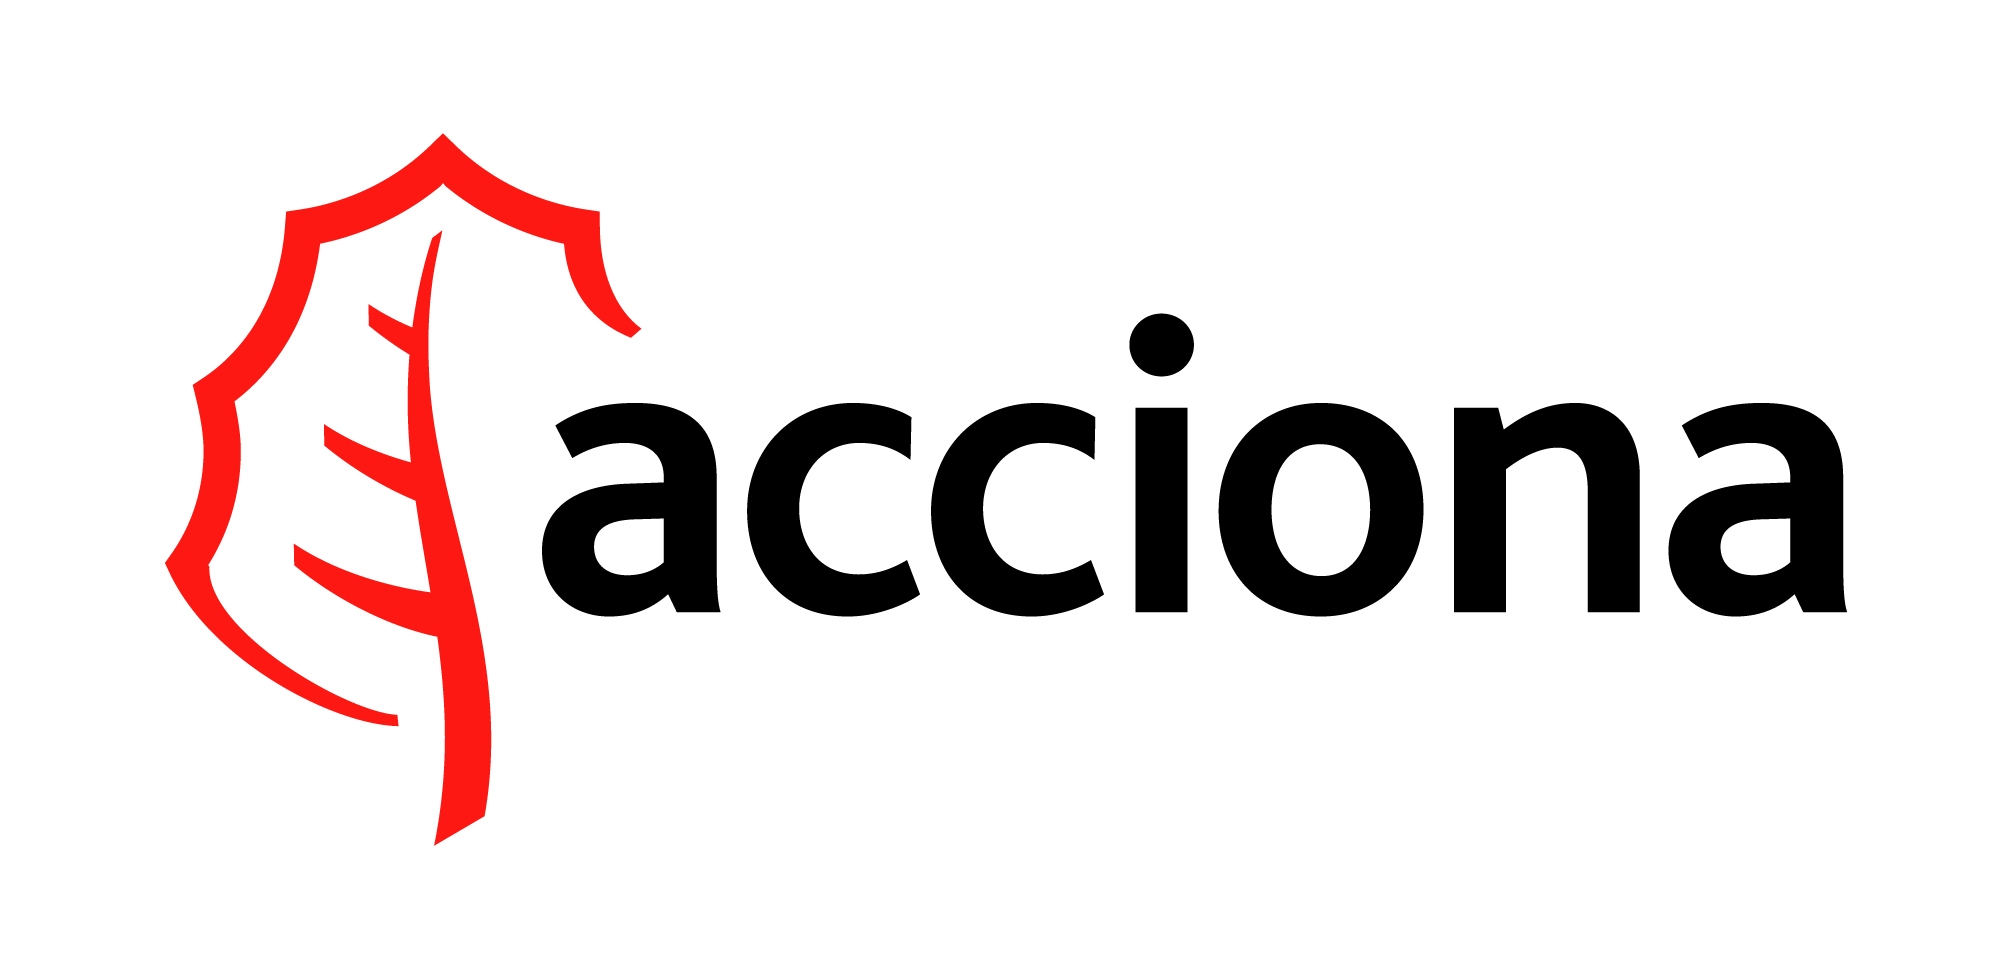 Logo Acciona Png - Acciona Logo, Transparent background PNG HD thumbnail